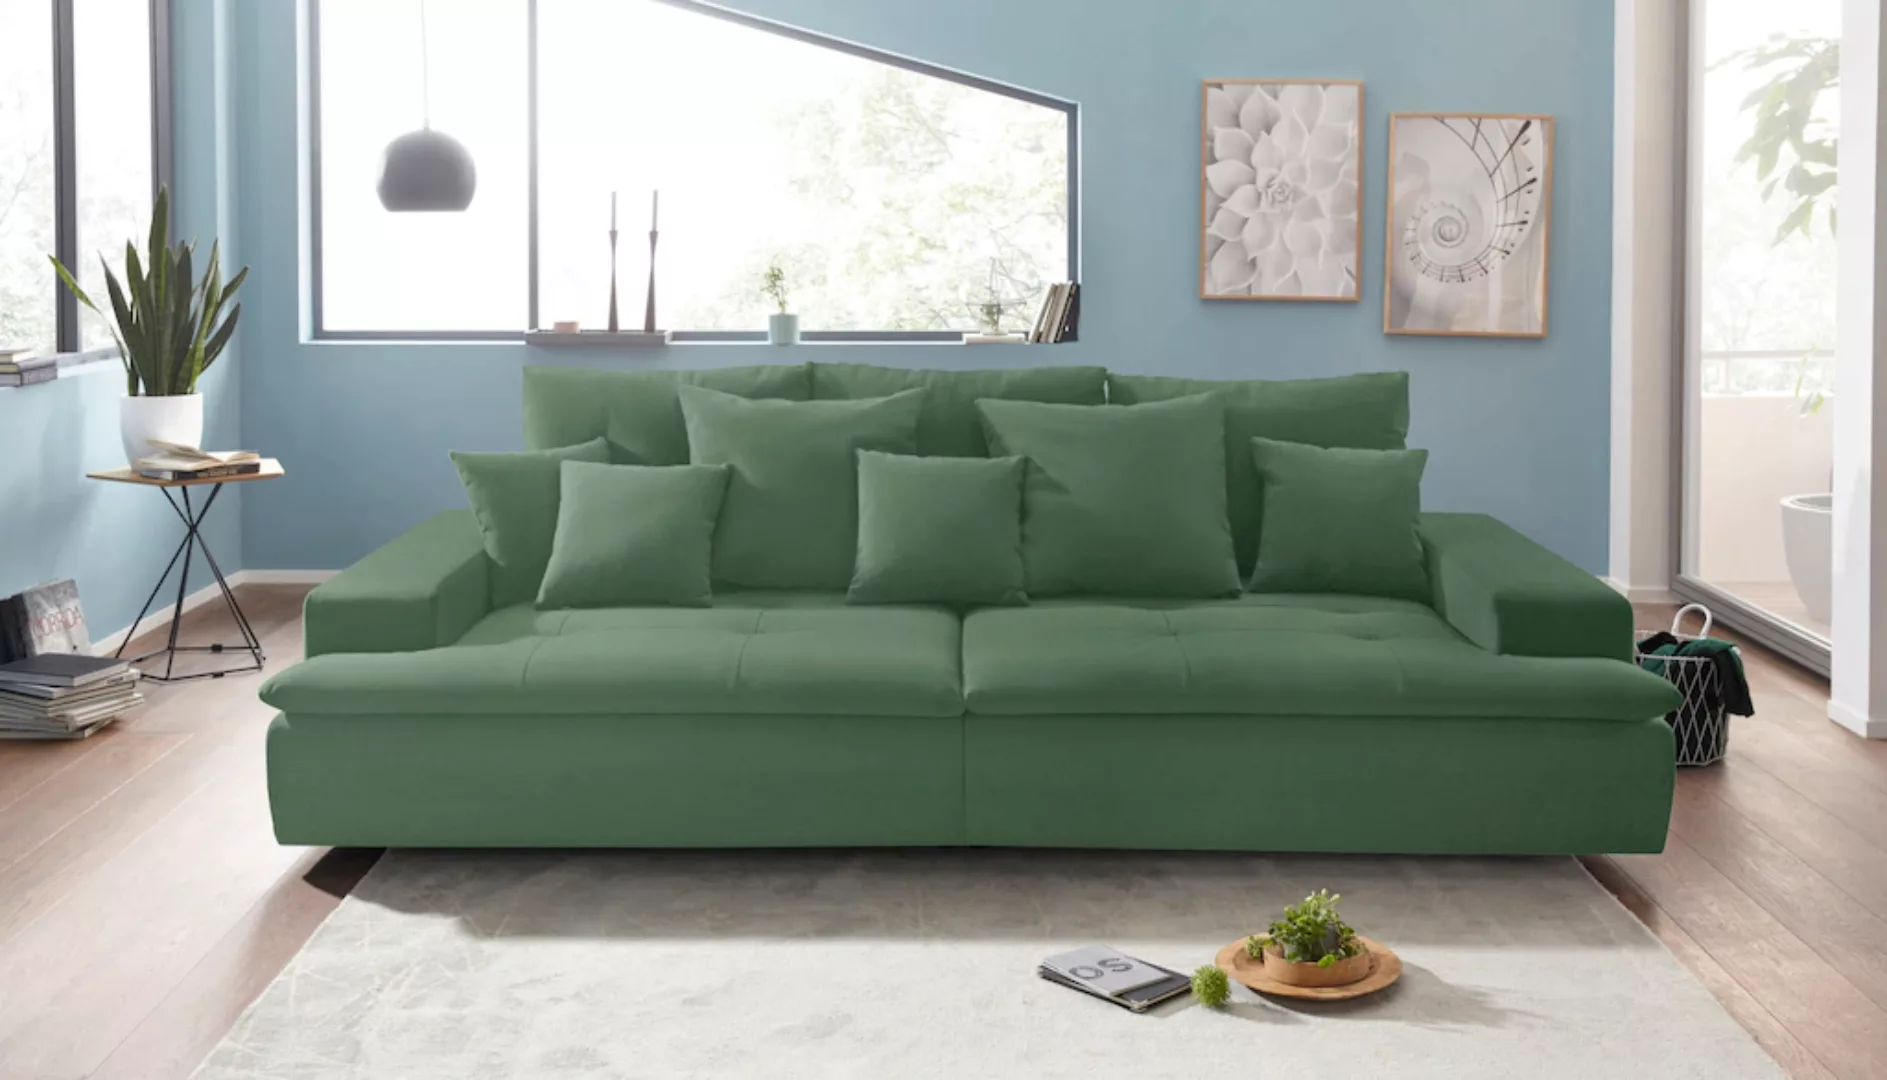 Mr. Couch Big-Sofa "Haiti" günstig online kaufen